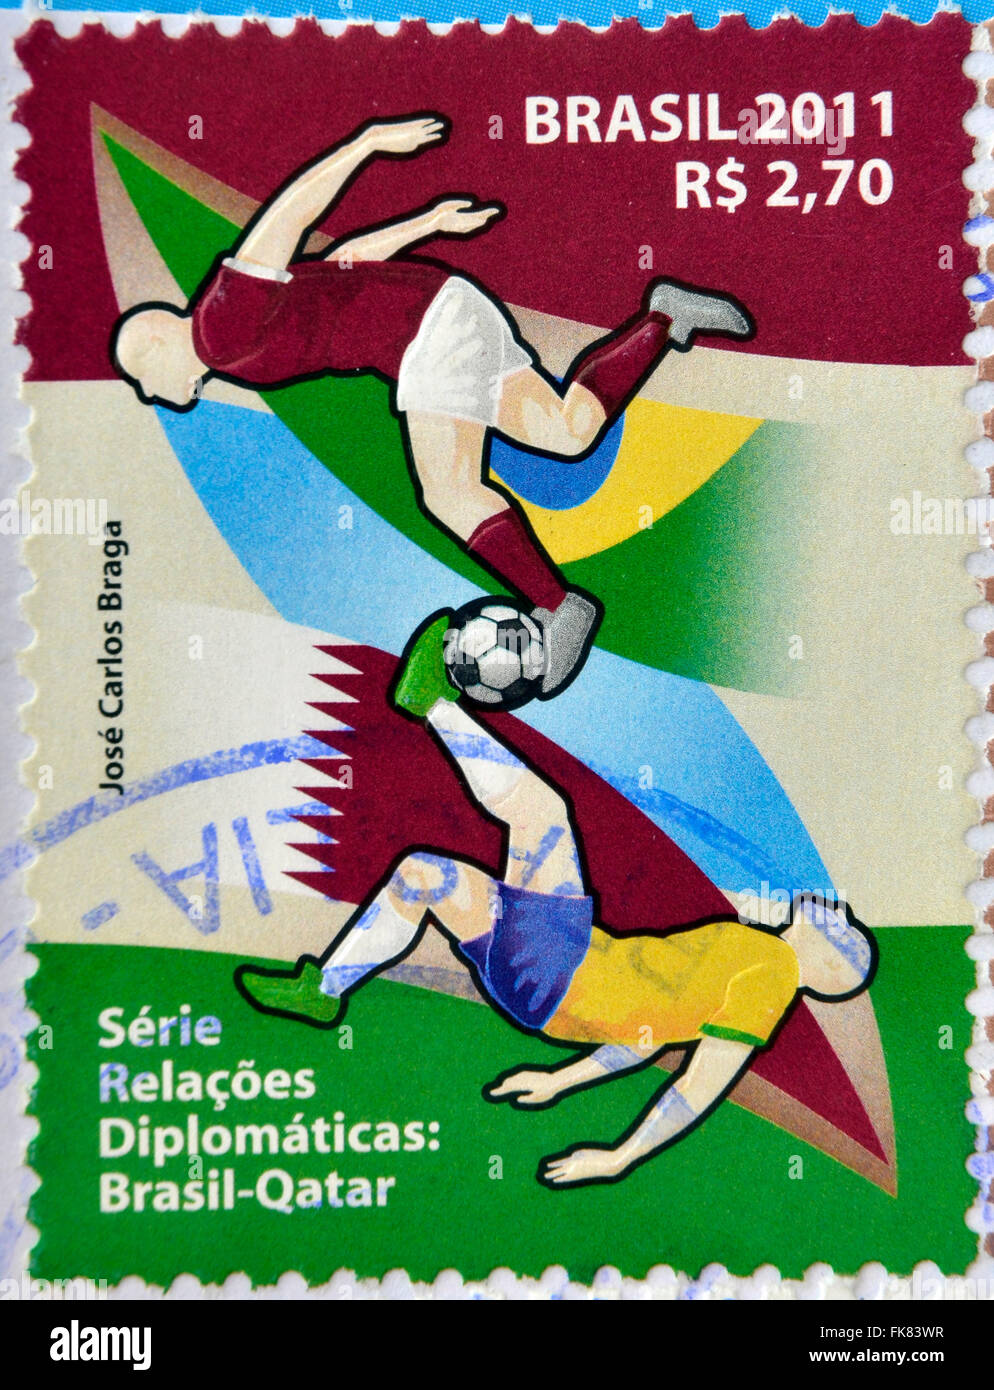 Brésil - circa 2011 : timbre imprimé au Brésil dédié aux relations diplomatiques entre le Brésil et le Qatar, spectacles football, circa Banque D'Images